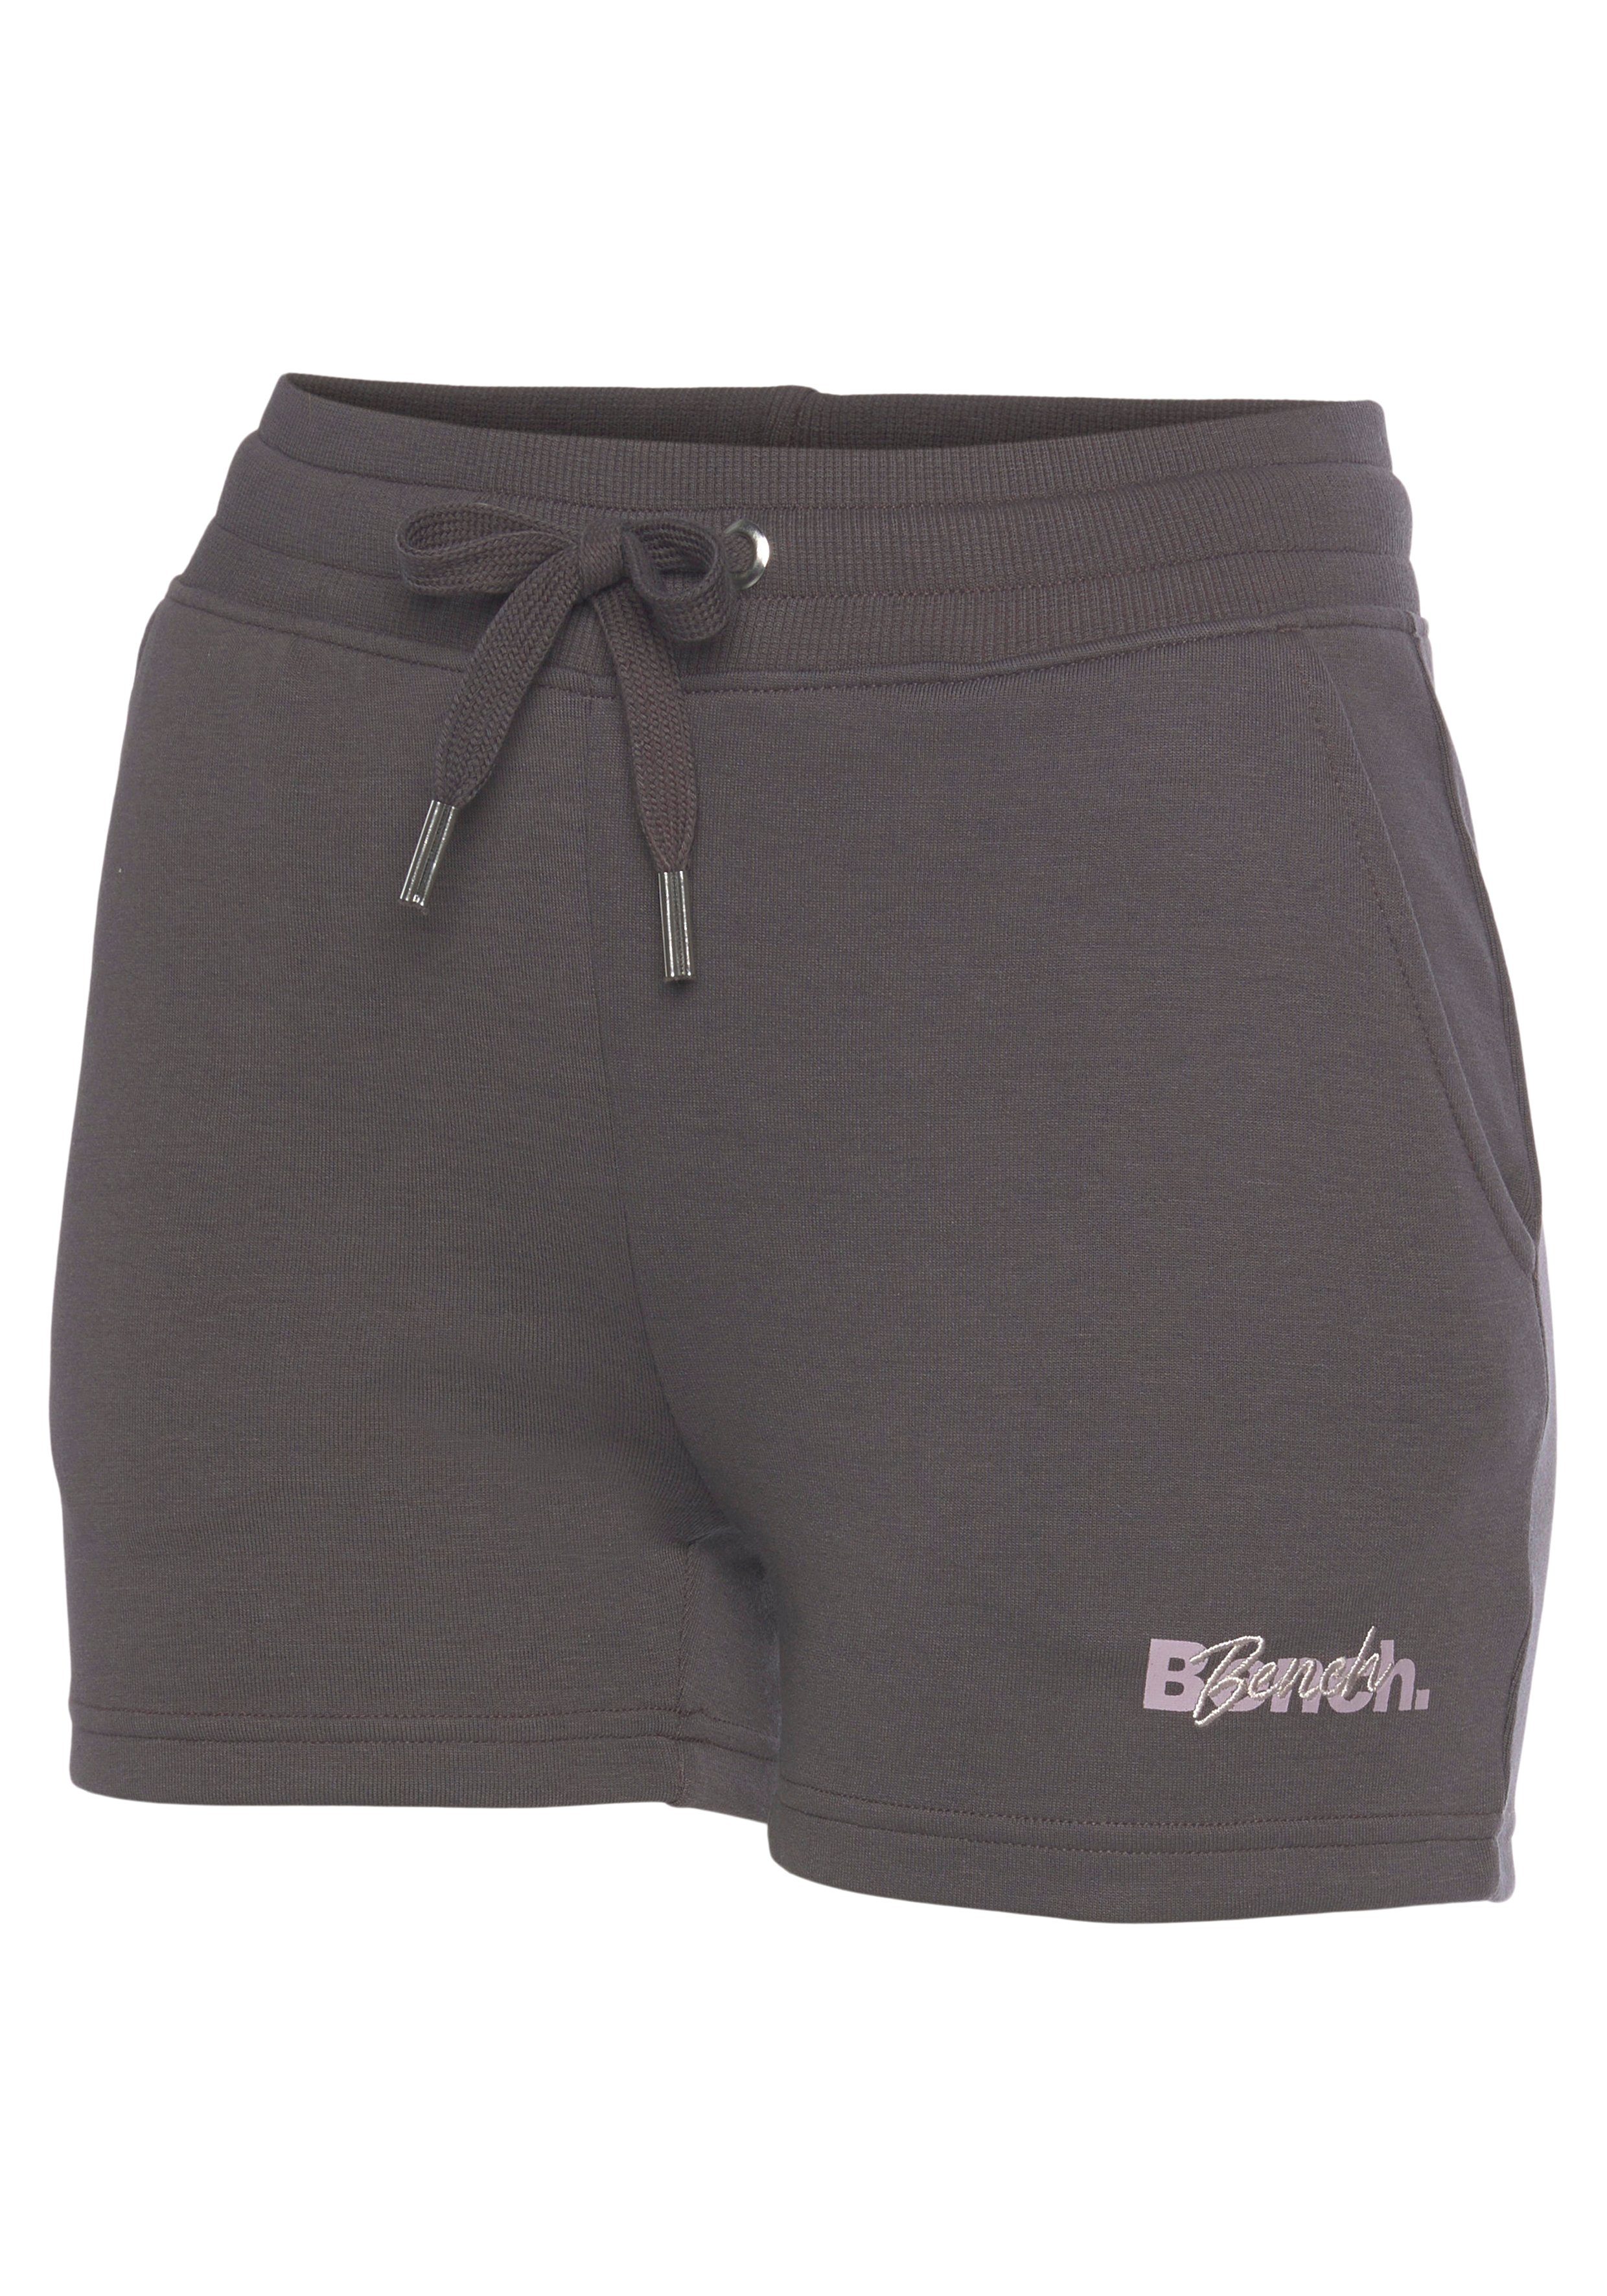 und stone Shorts mit Bench. Logodruck Loungewear Stickerei